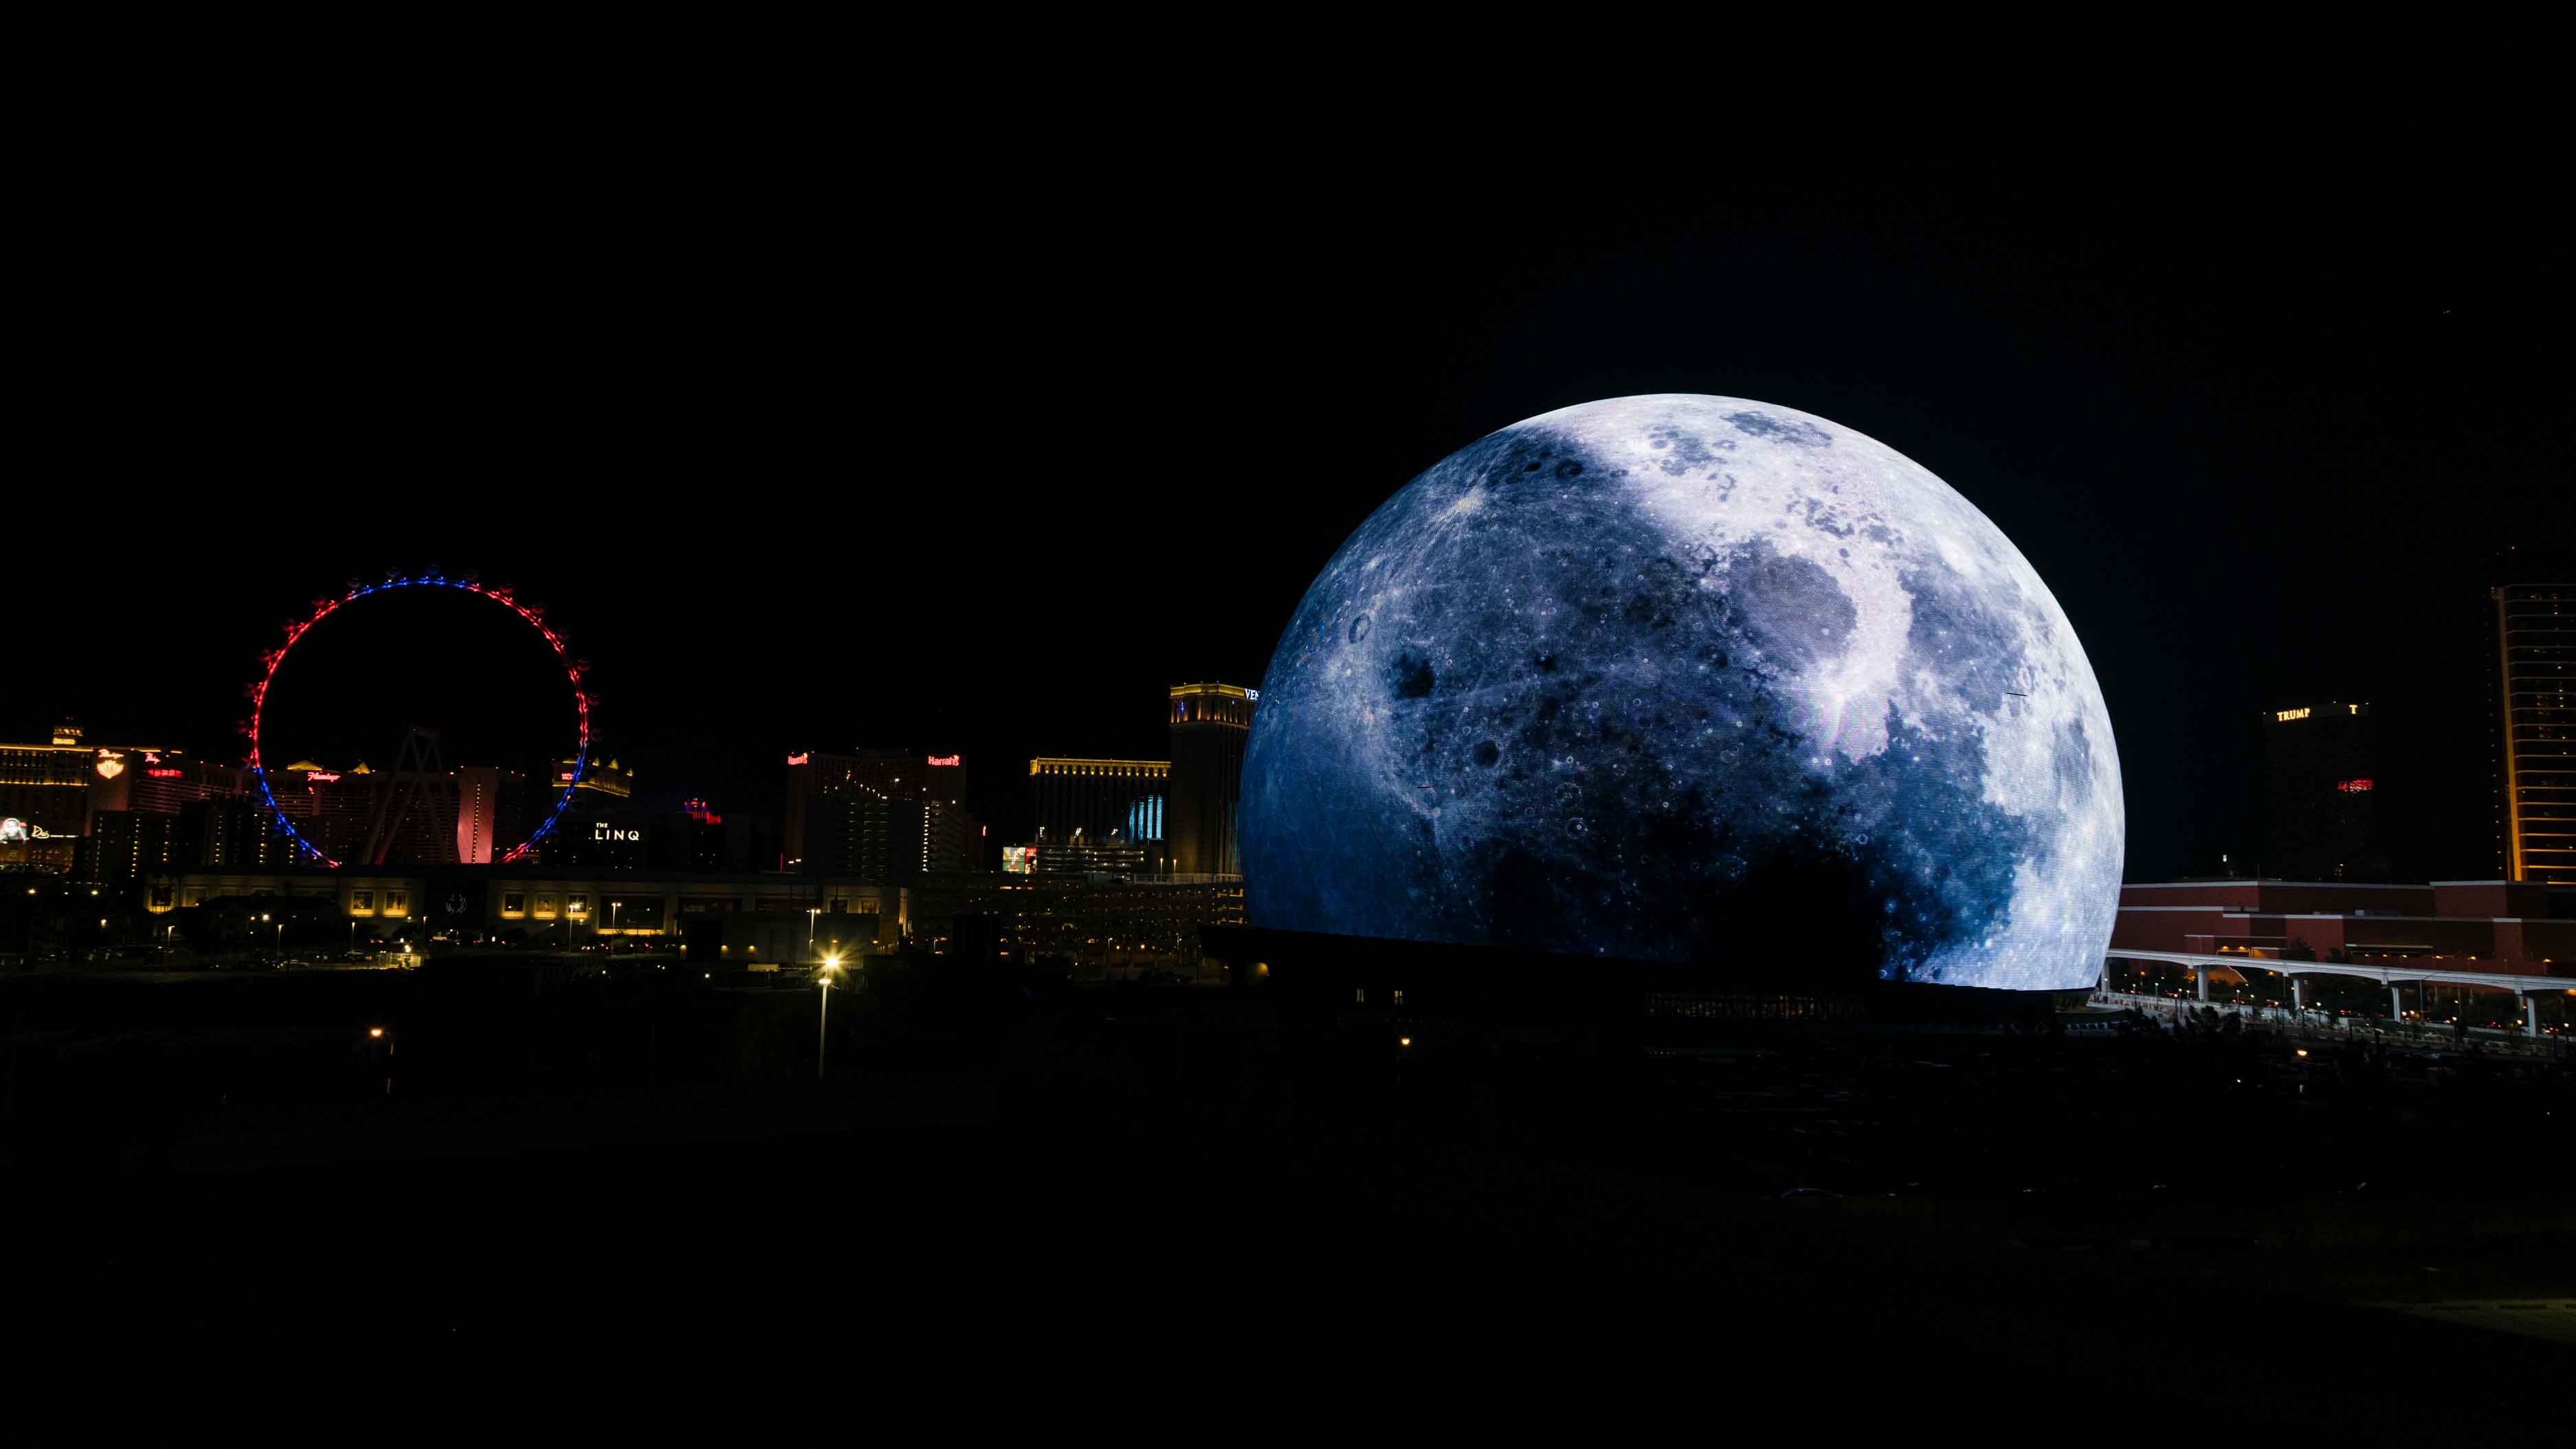 Las Vegas Raiders Blue Moon LED Desk Light